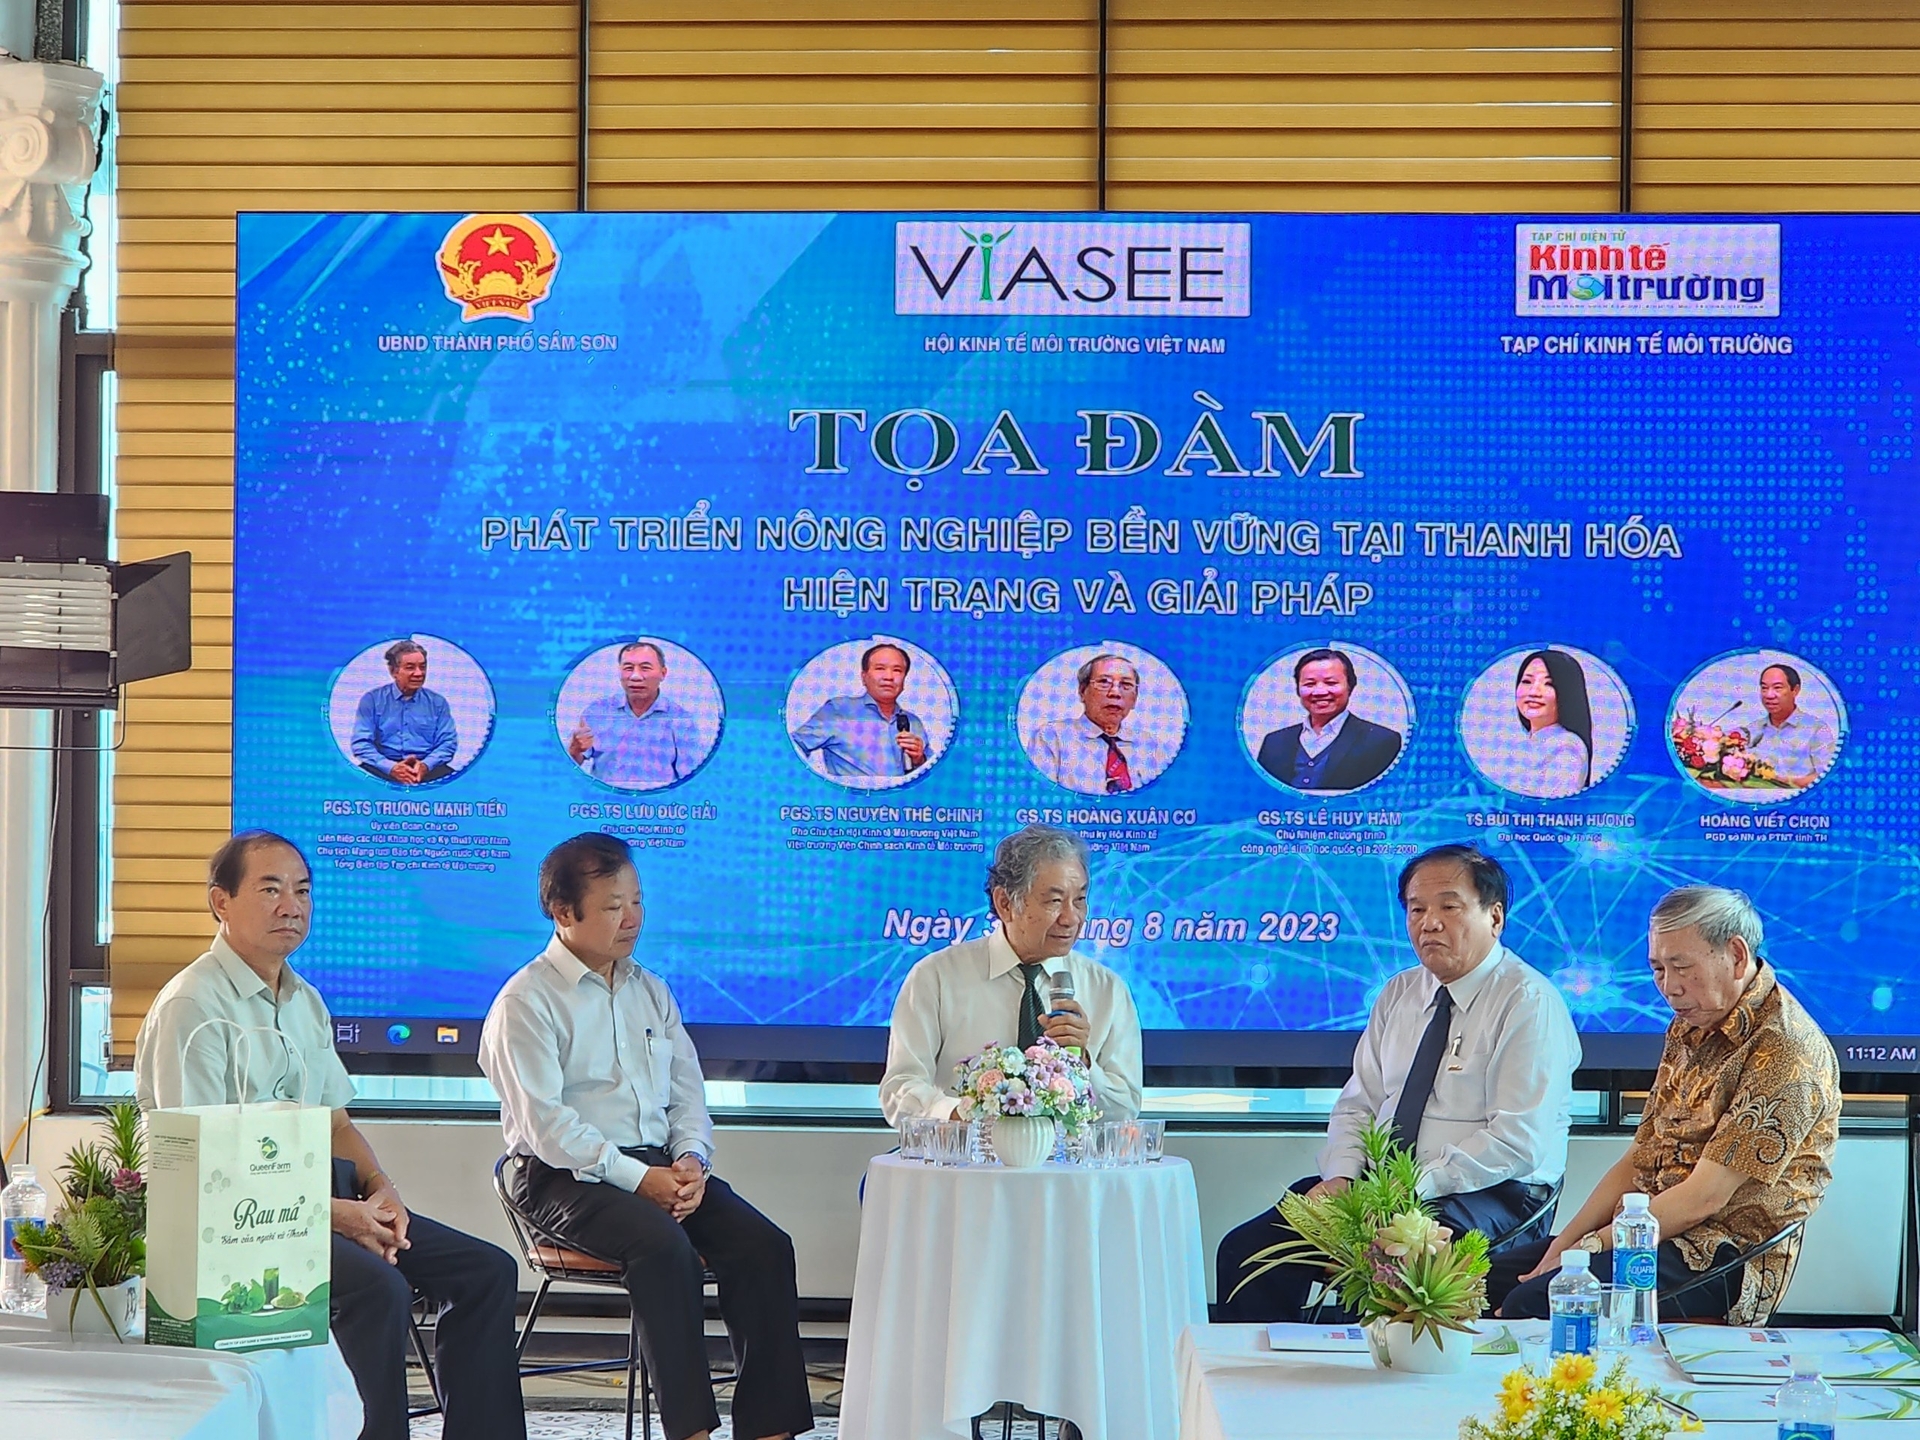 Các đại biểu đã thảo luận nhiều vấn đề về phát triển nông nghiệp bền vững tại Thanh Hóa.